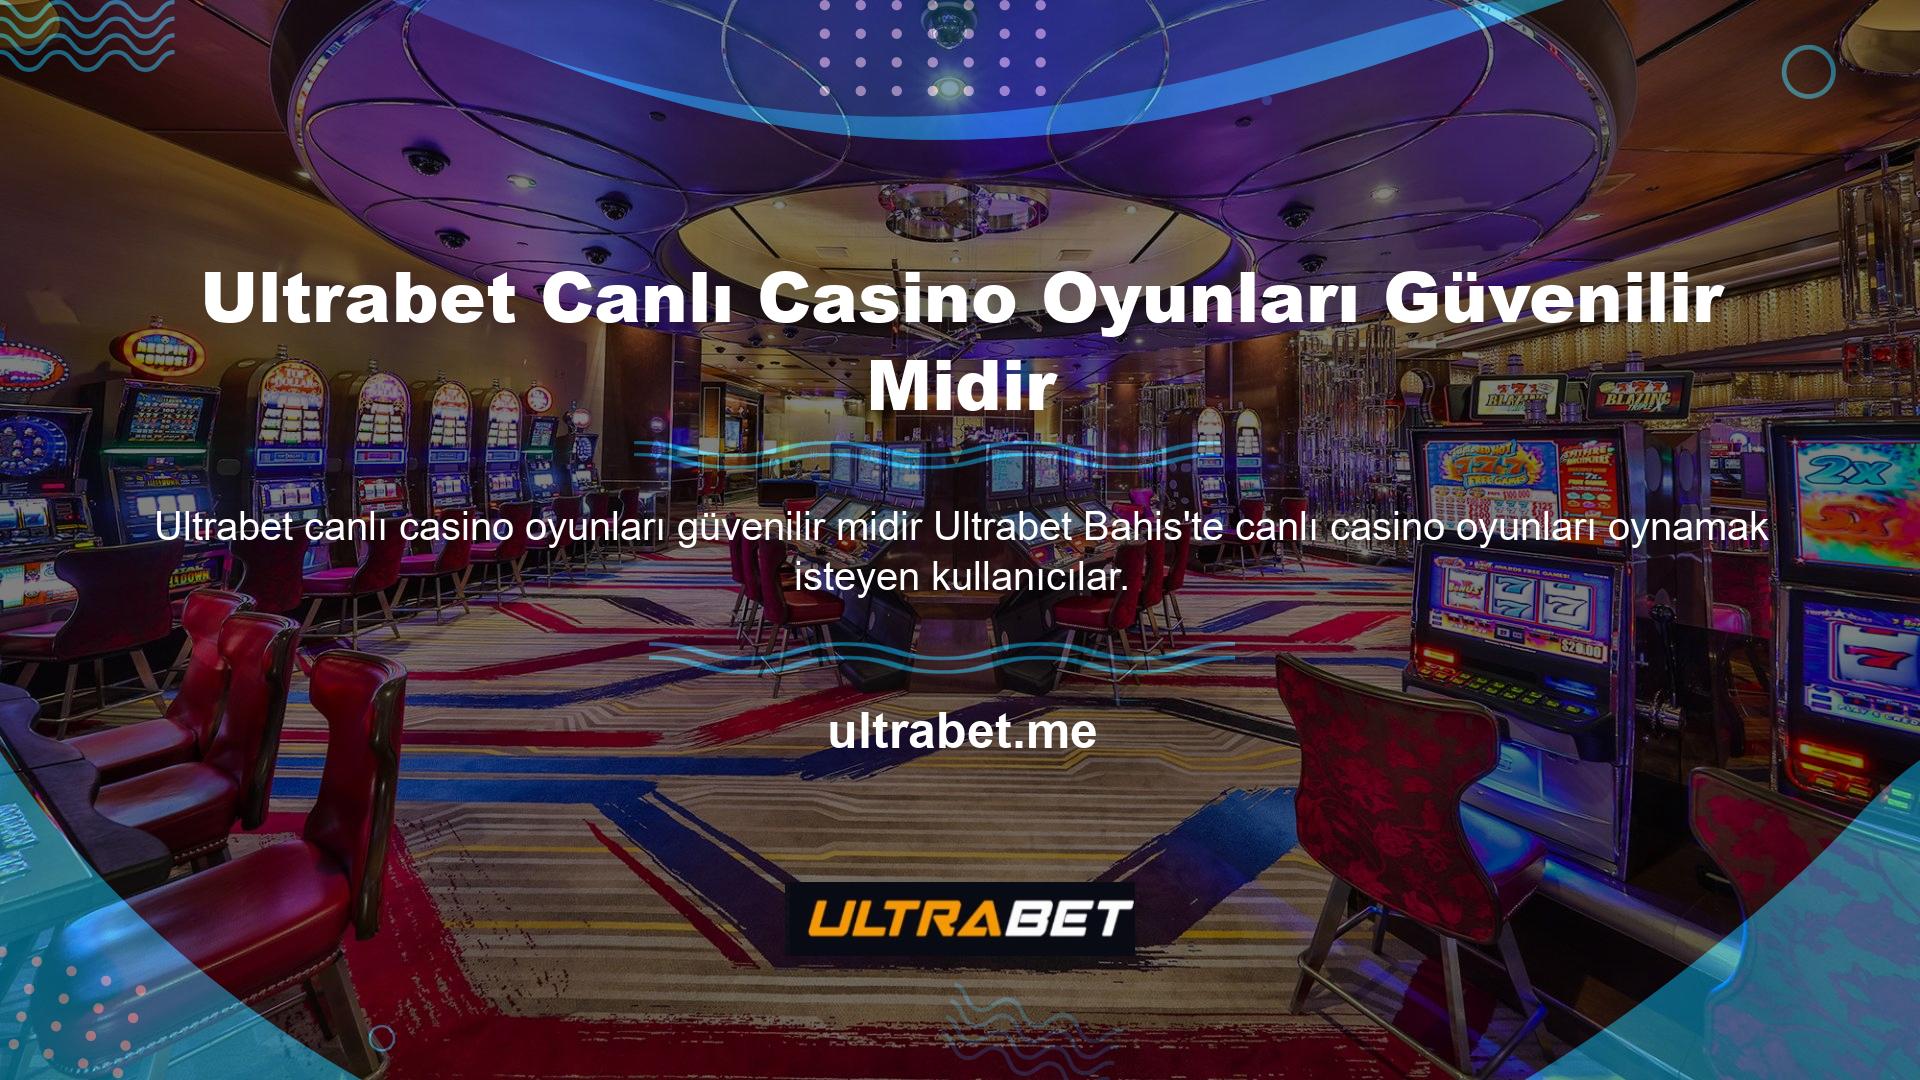 Ultrabet canlı casino oyunlarının güvenilir olup olmadığını öğrenmek istiyordu